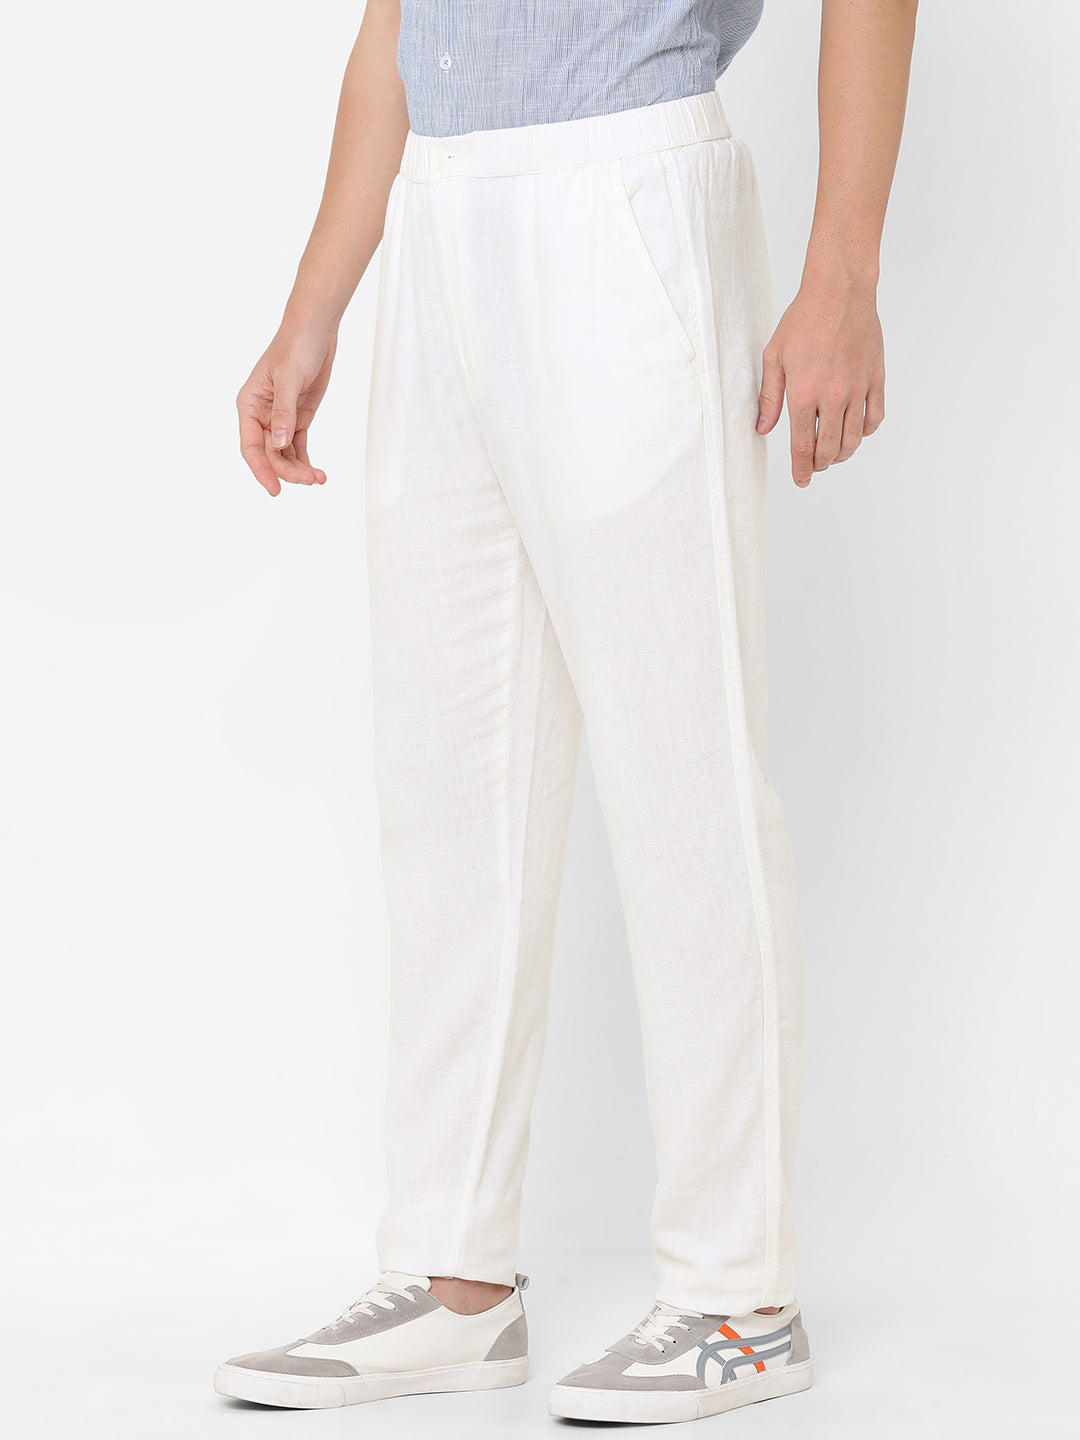 Men's Cotton Linen White Regular Fit Pant